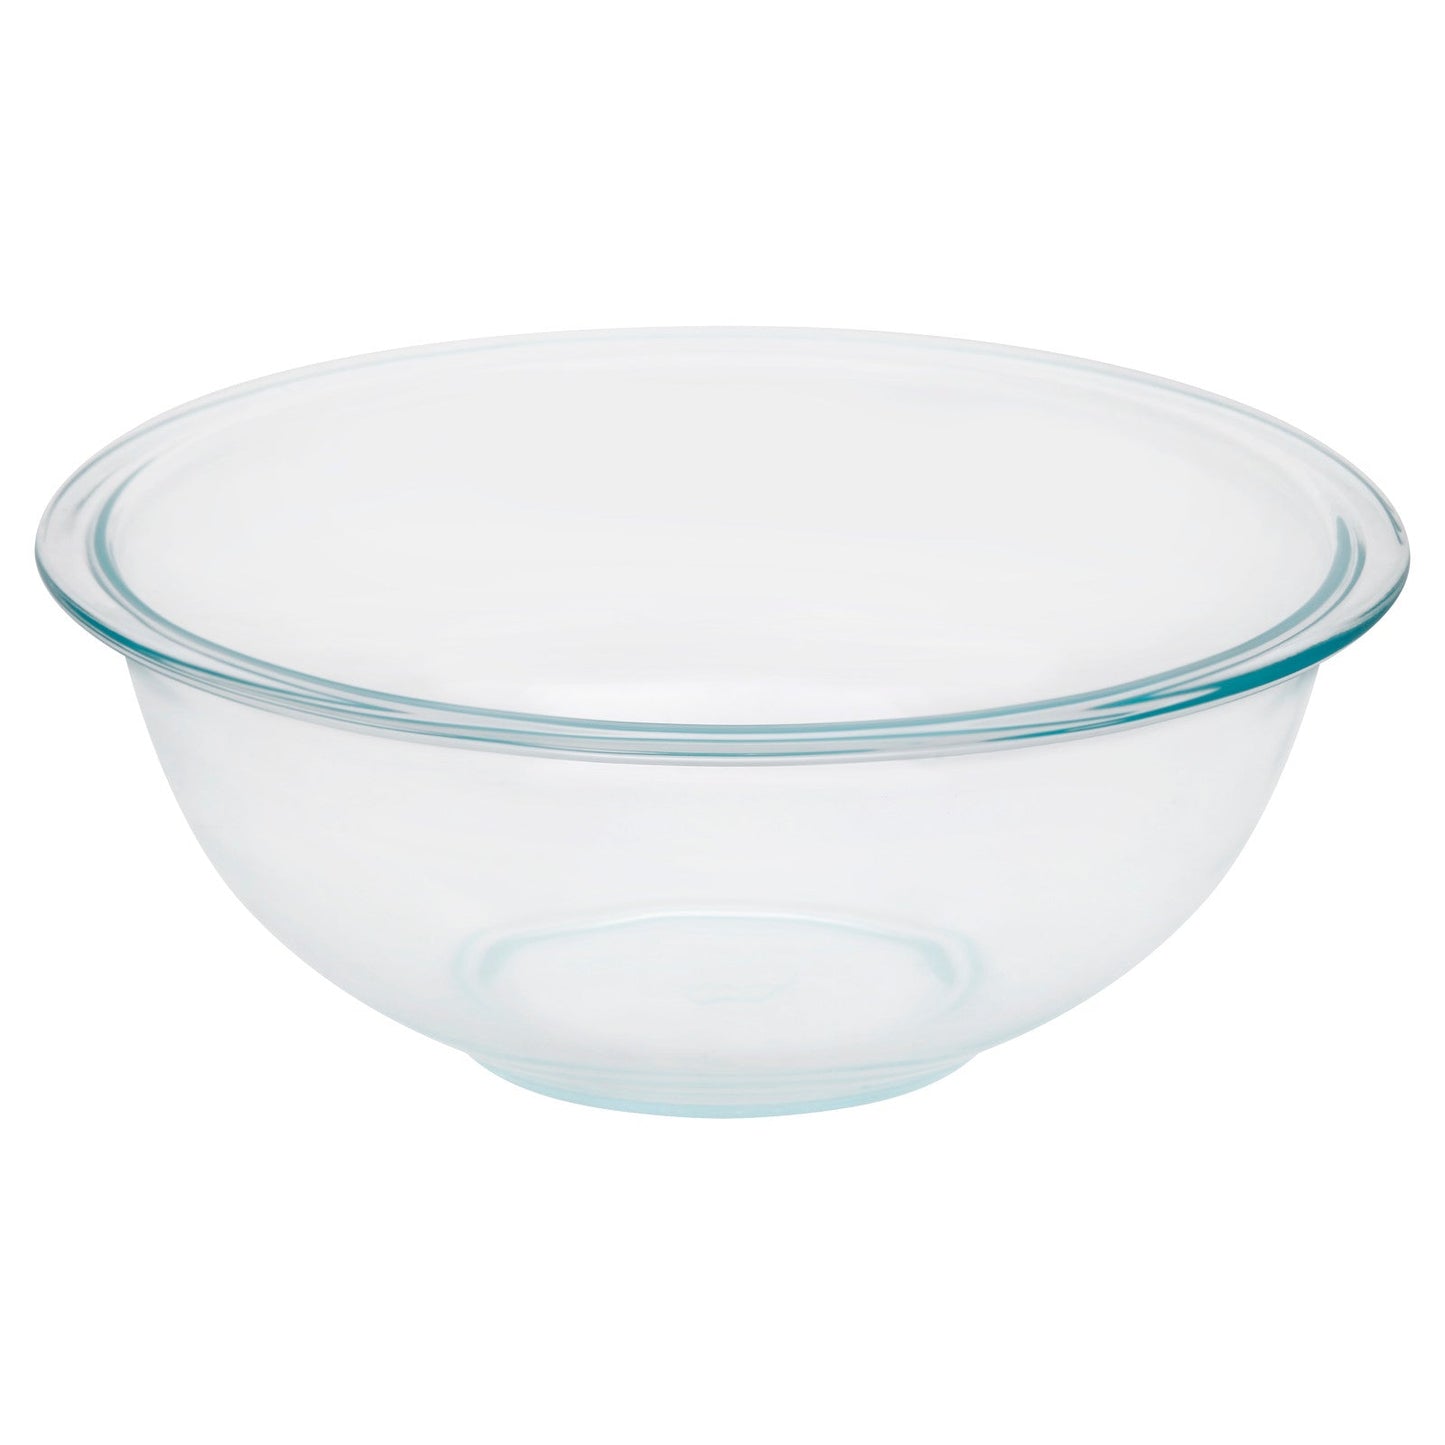 bowl-de-vidrio-pyrex-2-4-lts